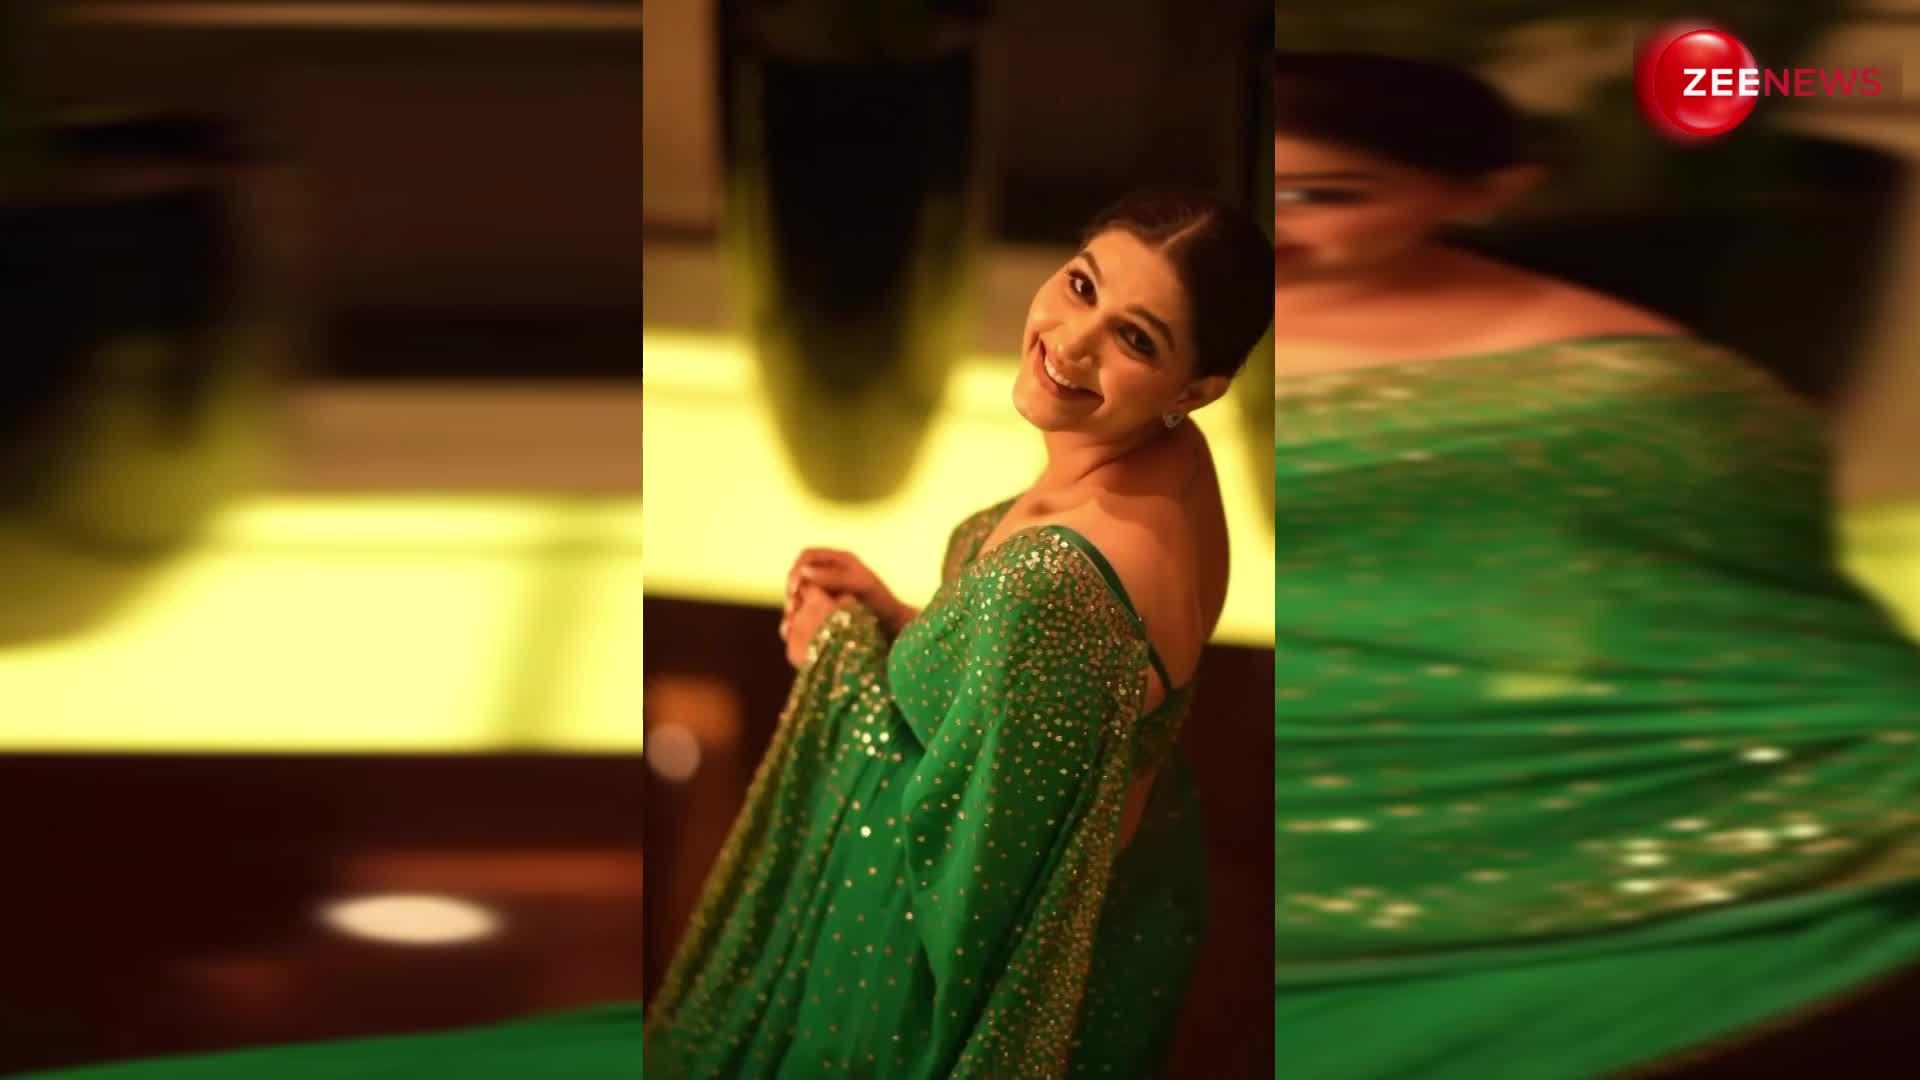 हरी साड़ी में Sapna Choudhary ने बनाया बेहद खूबसूरत वीडियो, अदाओं को देख दीवाने हुए लोग